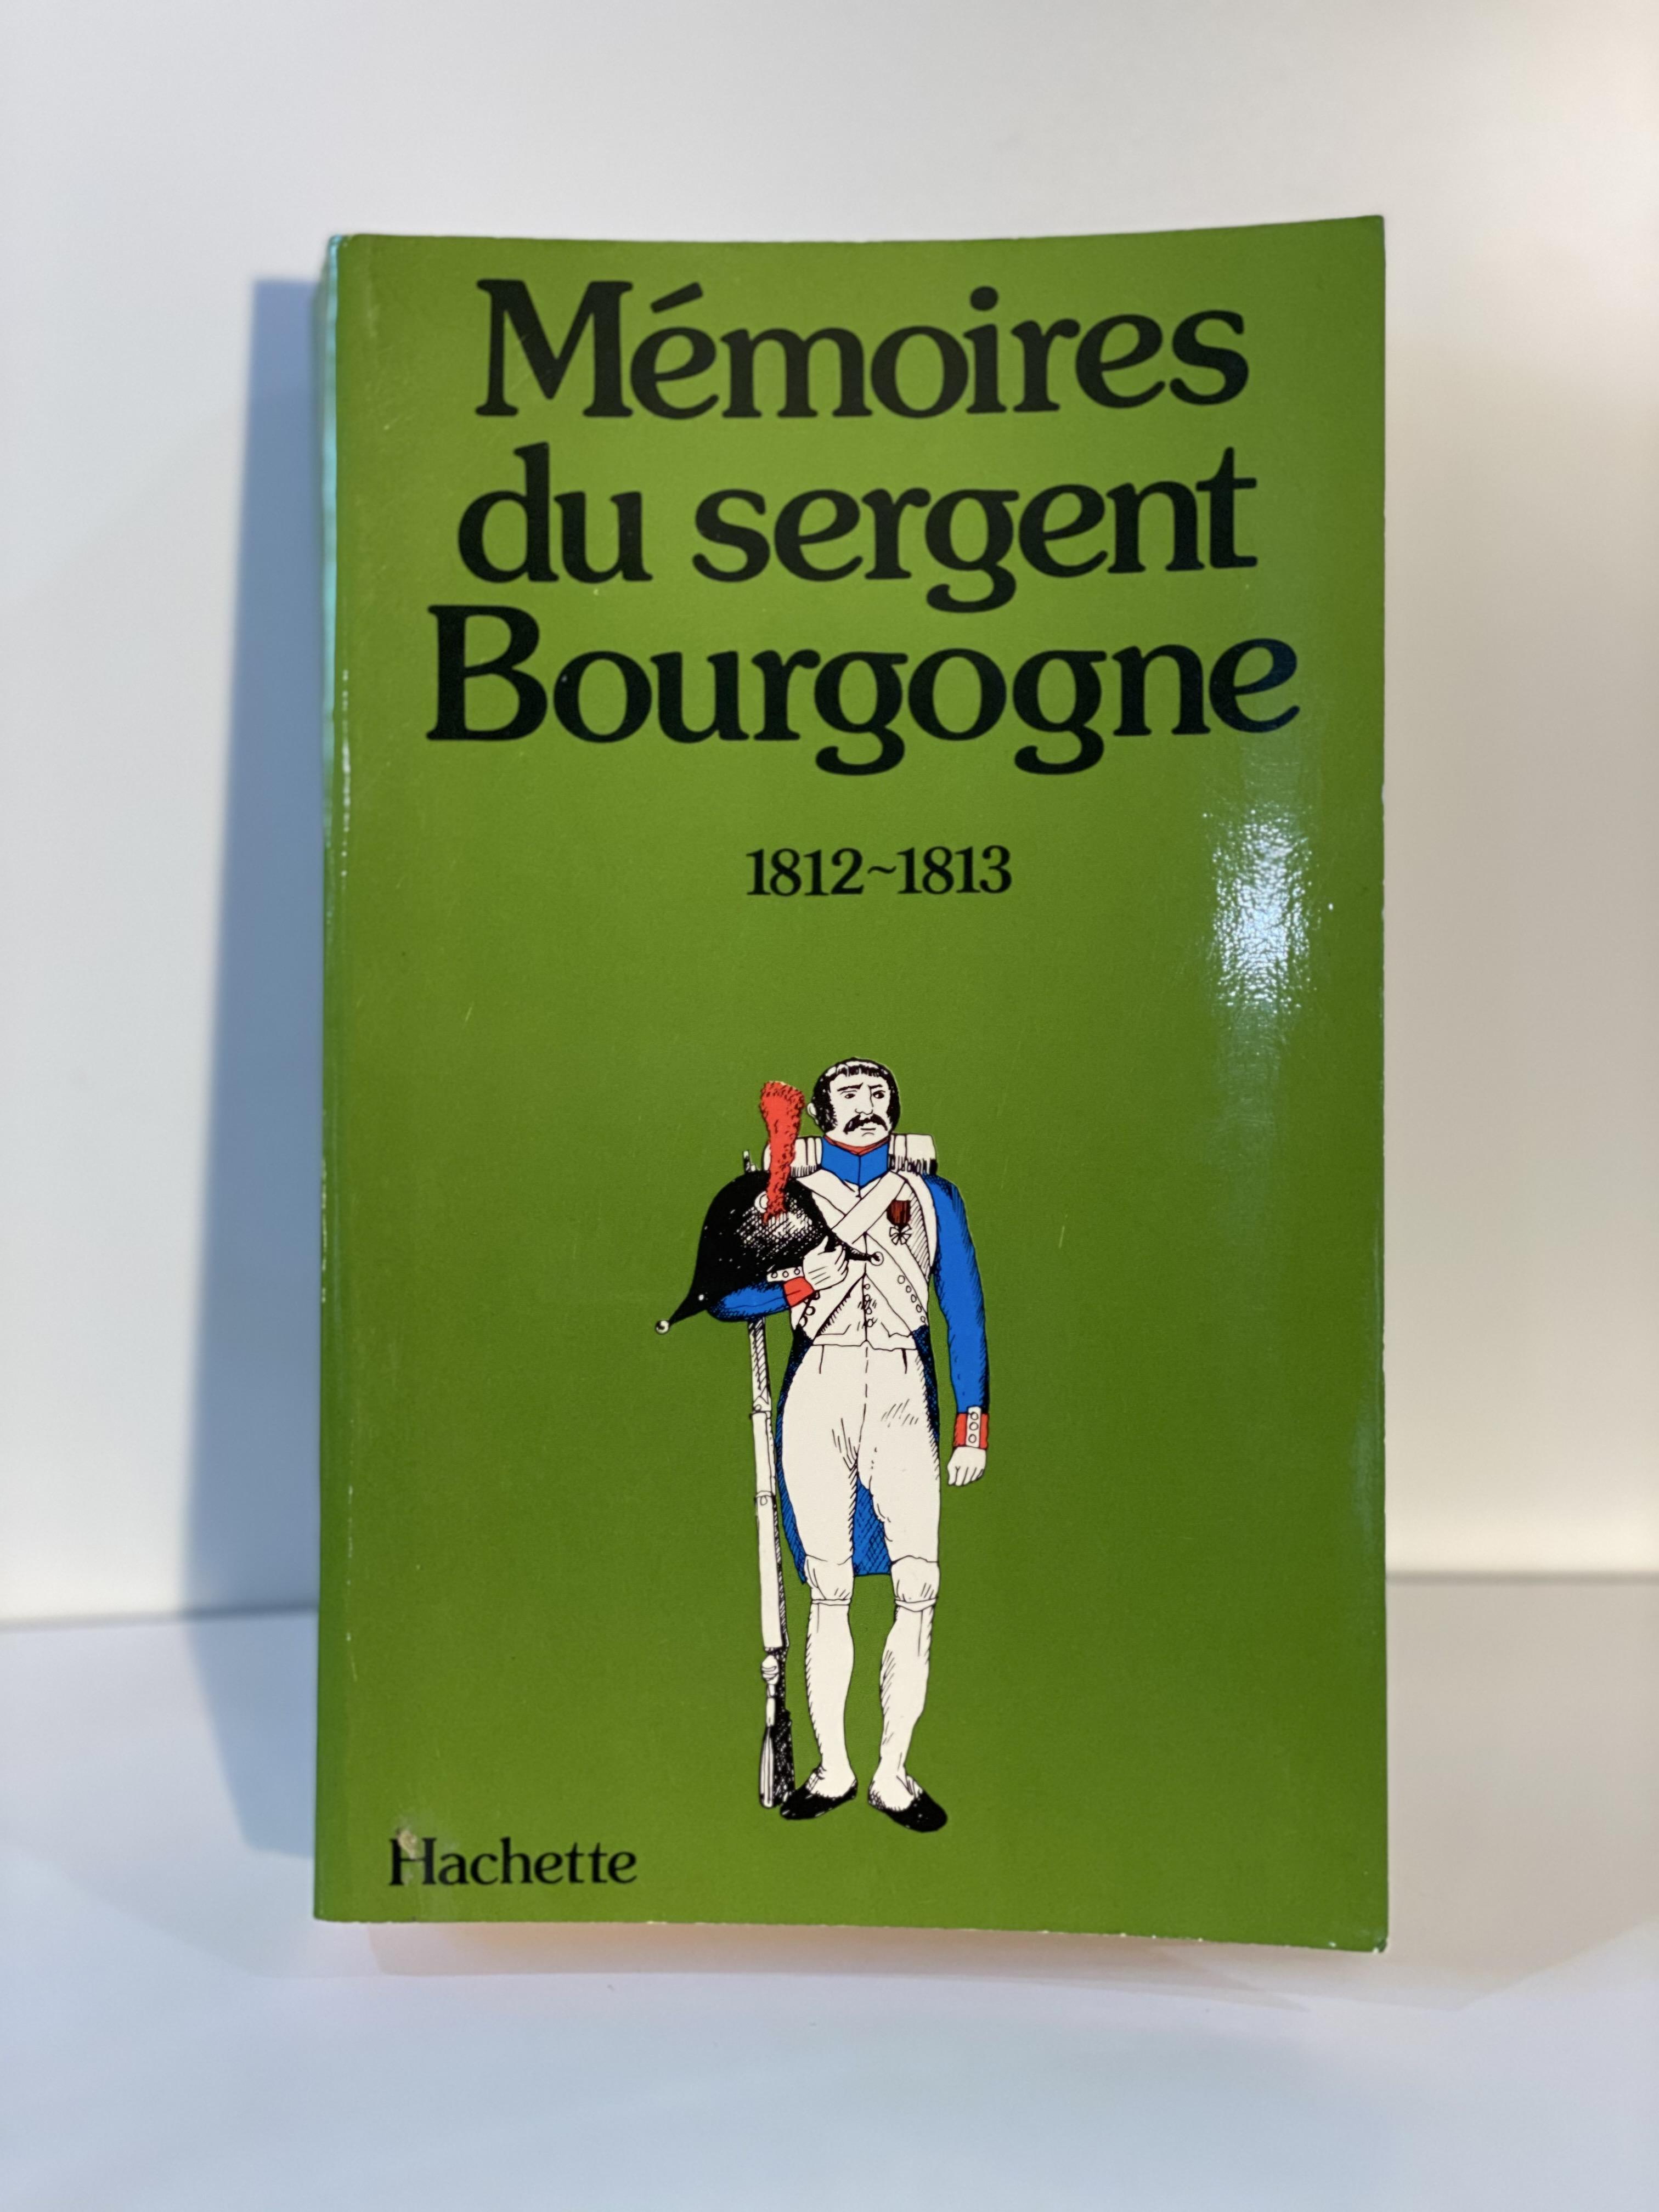 Memoires du sergent Bourgogne: 1812-1813 (French Edition) - Bourgogne, Adrien Jean Baptiste Francois